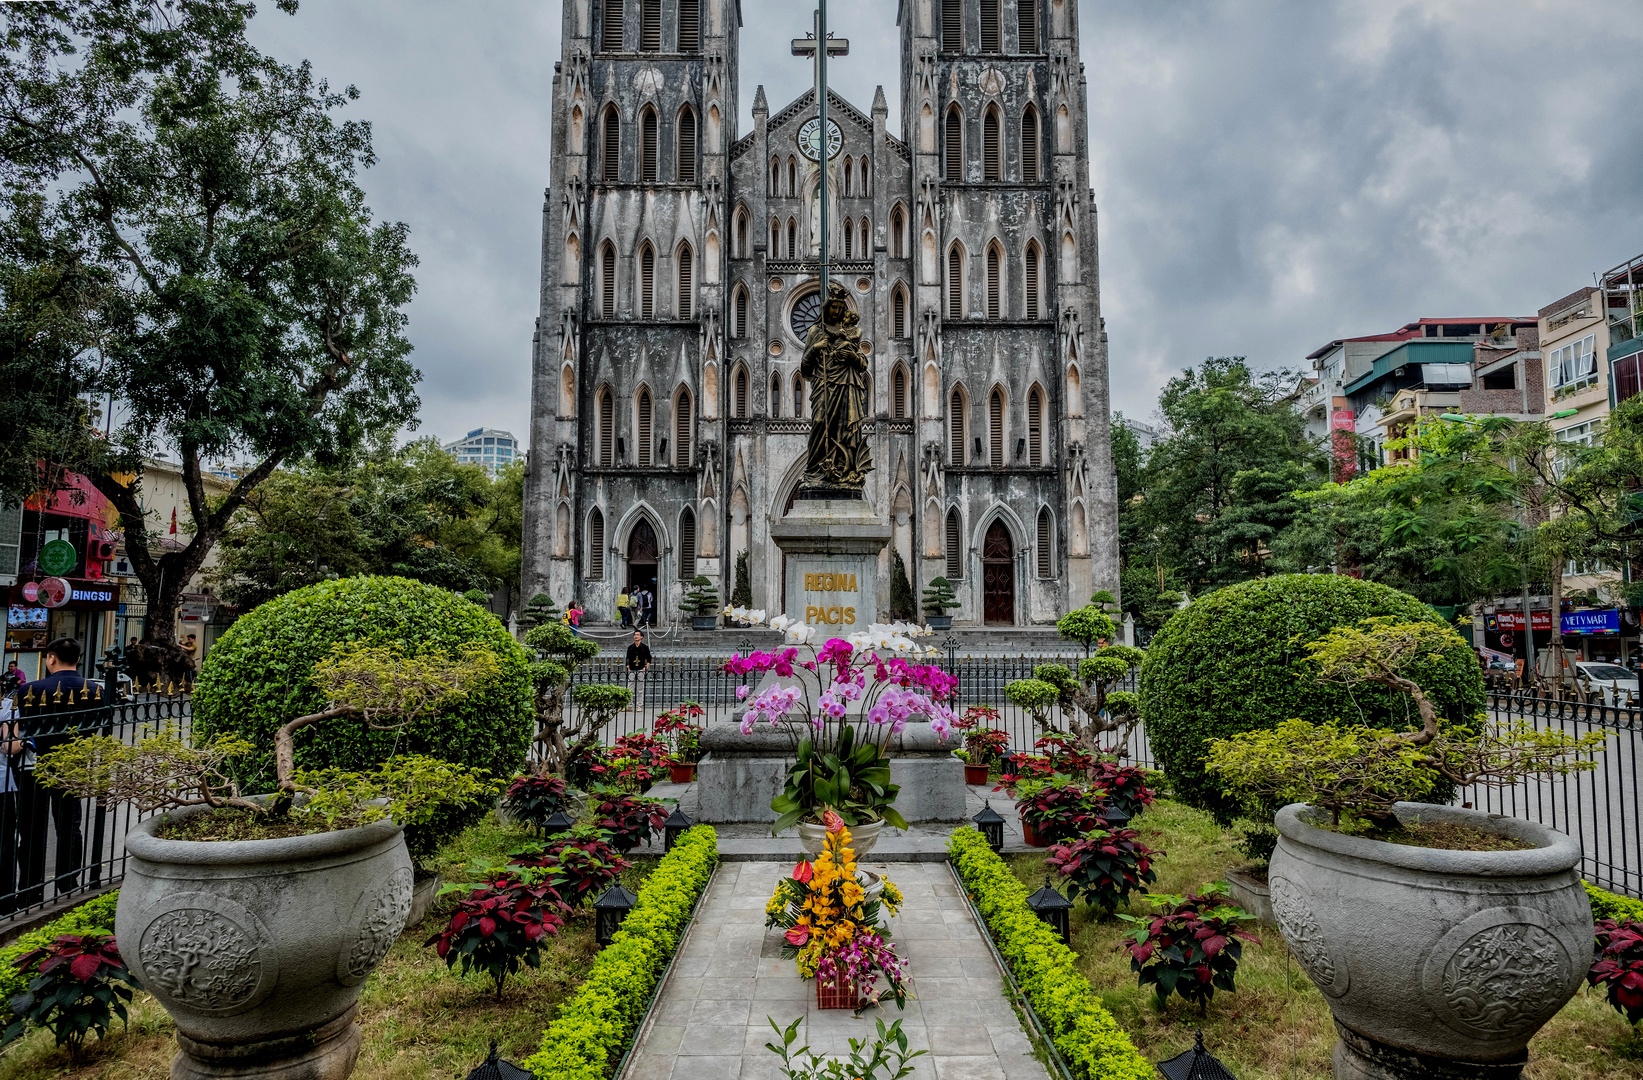 St. Joseph's Cathedral - Hanoi